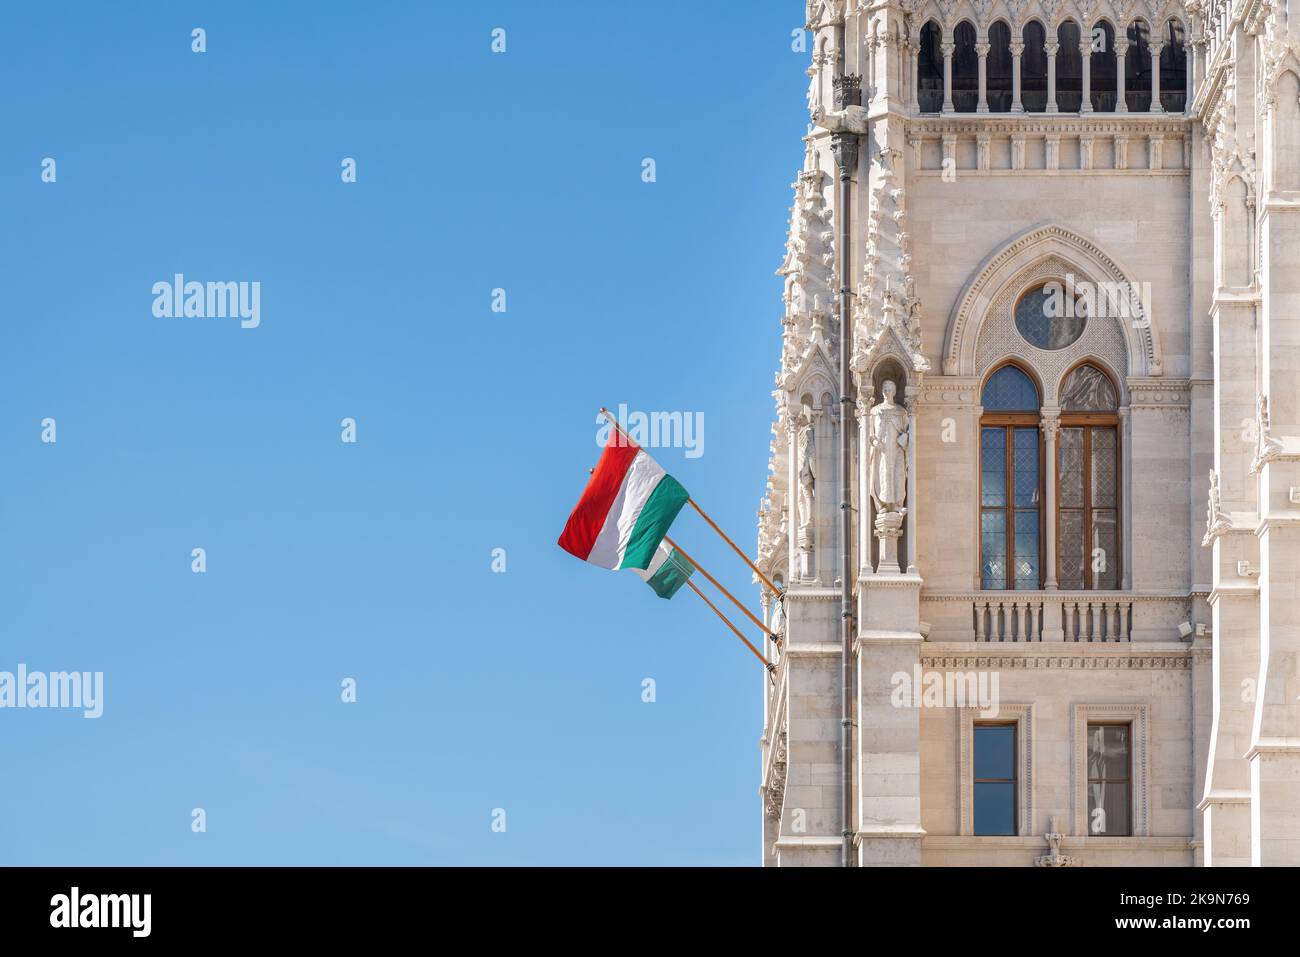 Bandiera ungherese presso l'edificio del Parlamento ungherese - Budapest, Ungheria Foto Stock